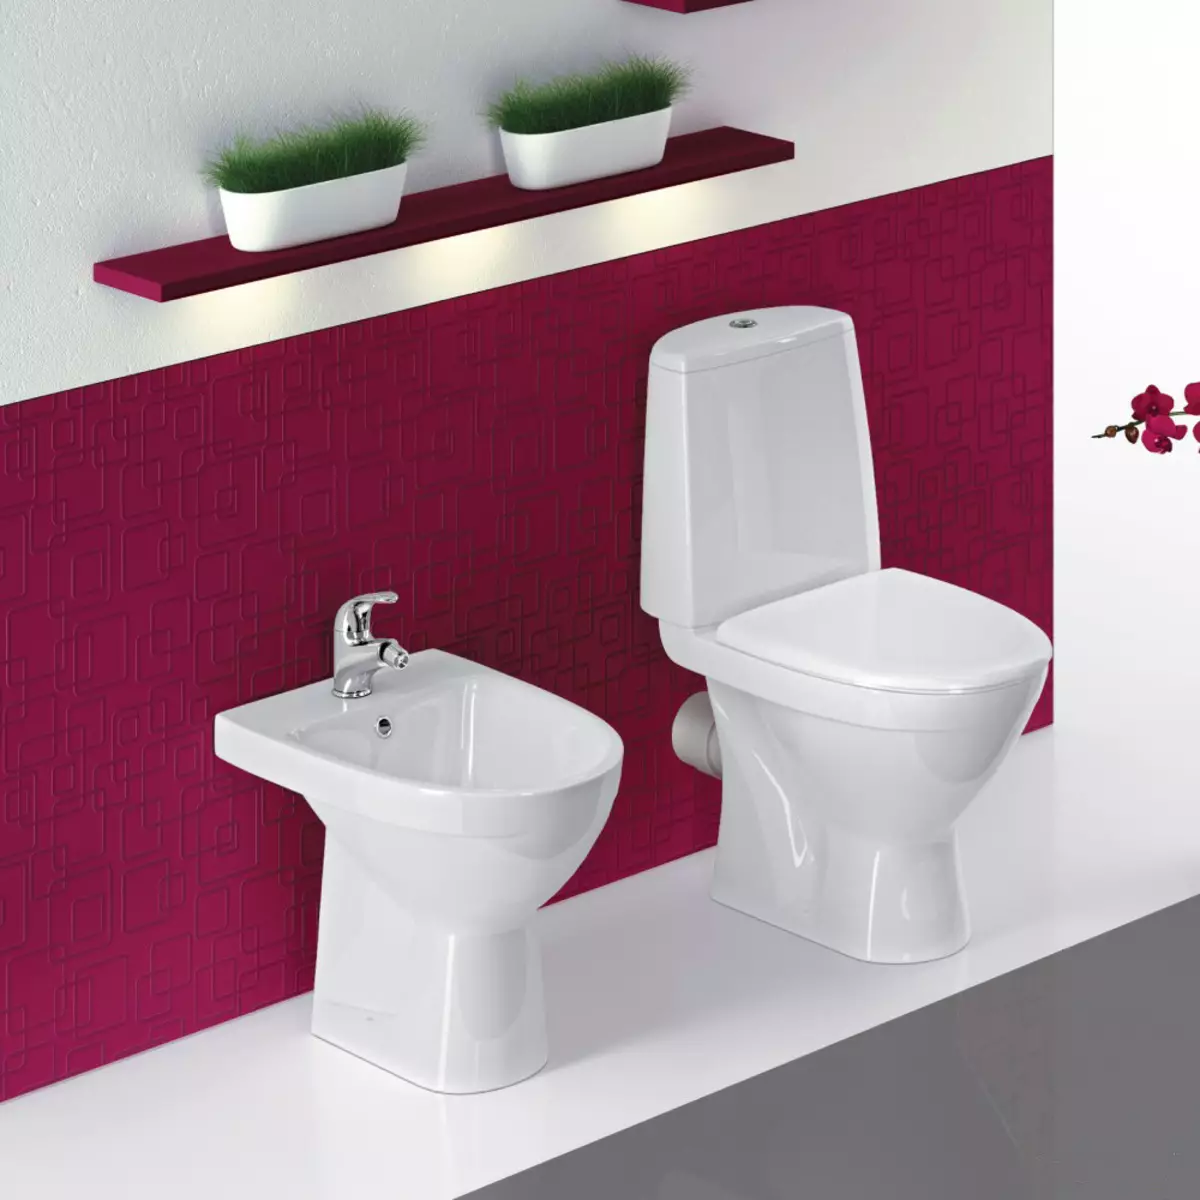 Castron de toaletă cu eliberare oblică: importat unitar-compact, colțul ediției, toaletă compactă prin cablu și alte modele cu eliberare oblică 10523_30